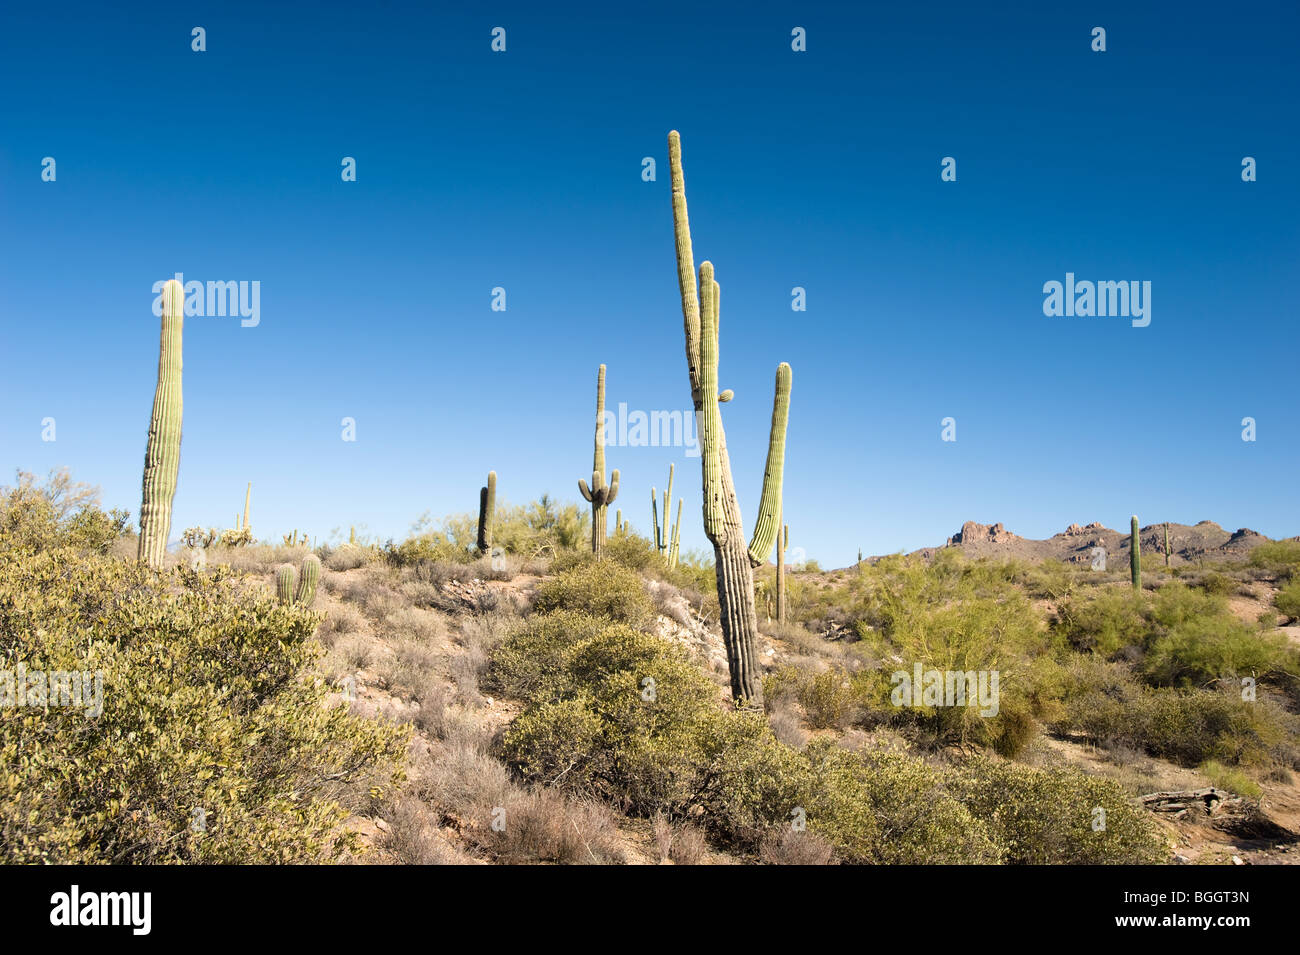 Eine schöne Wüste Szene mit blauem Himmel und Saguaro Kaktus in einem abgelegenen Wüste. Stockfoto